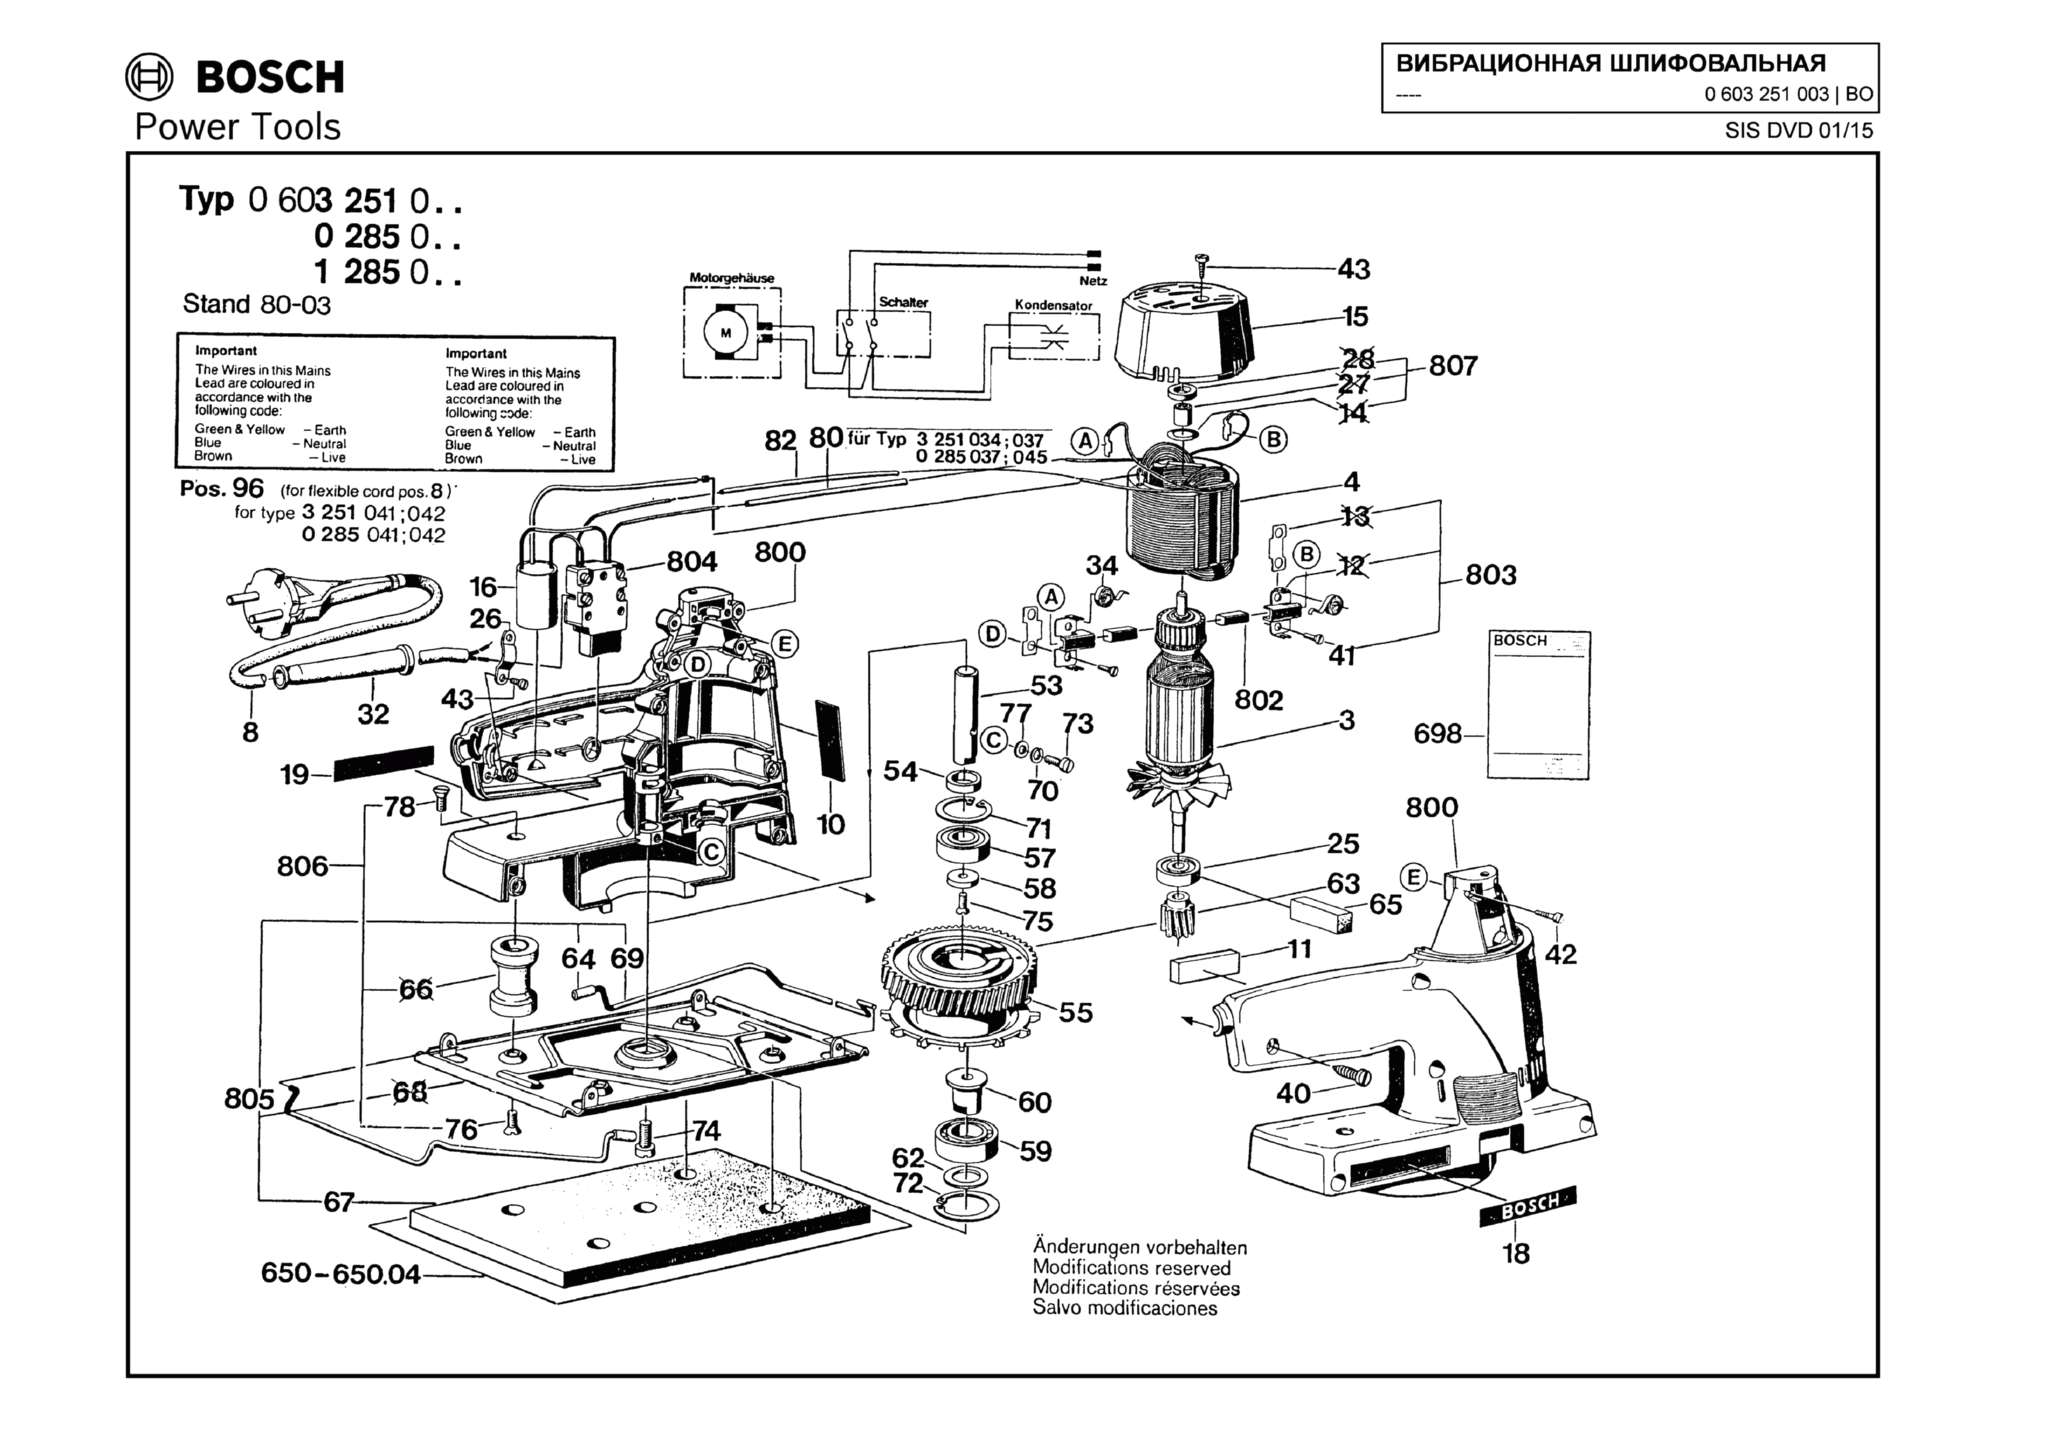 Запчасти, схема и деталировка Bosch (ТИП 0603251003)